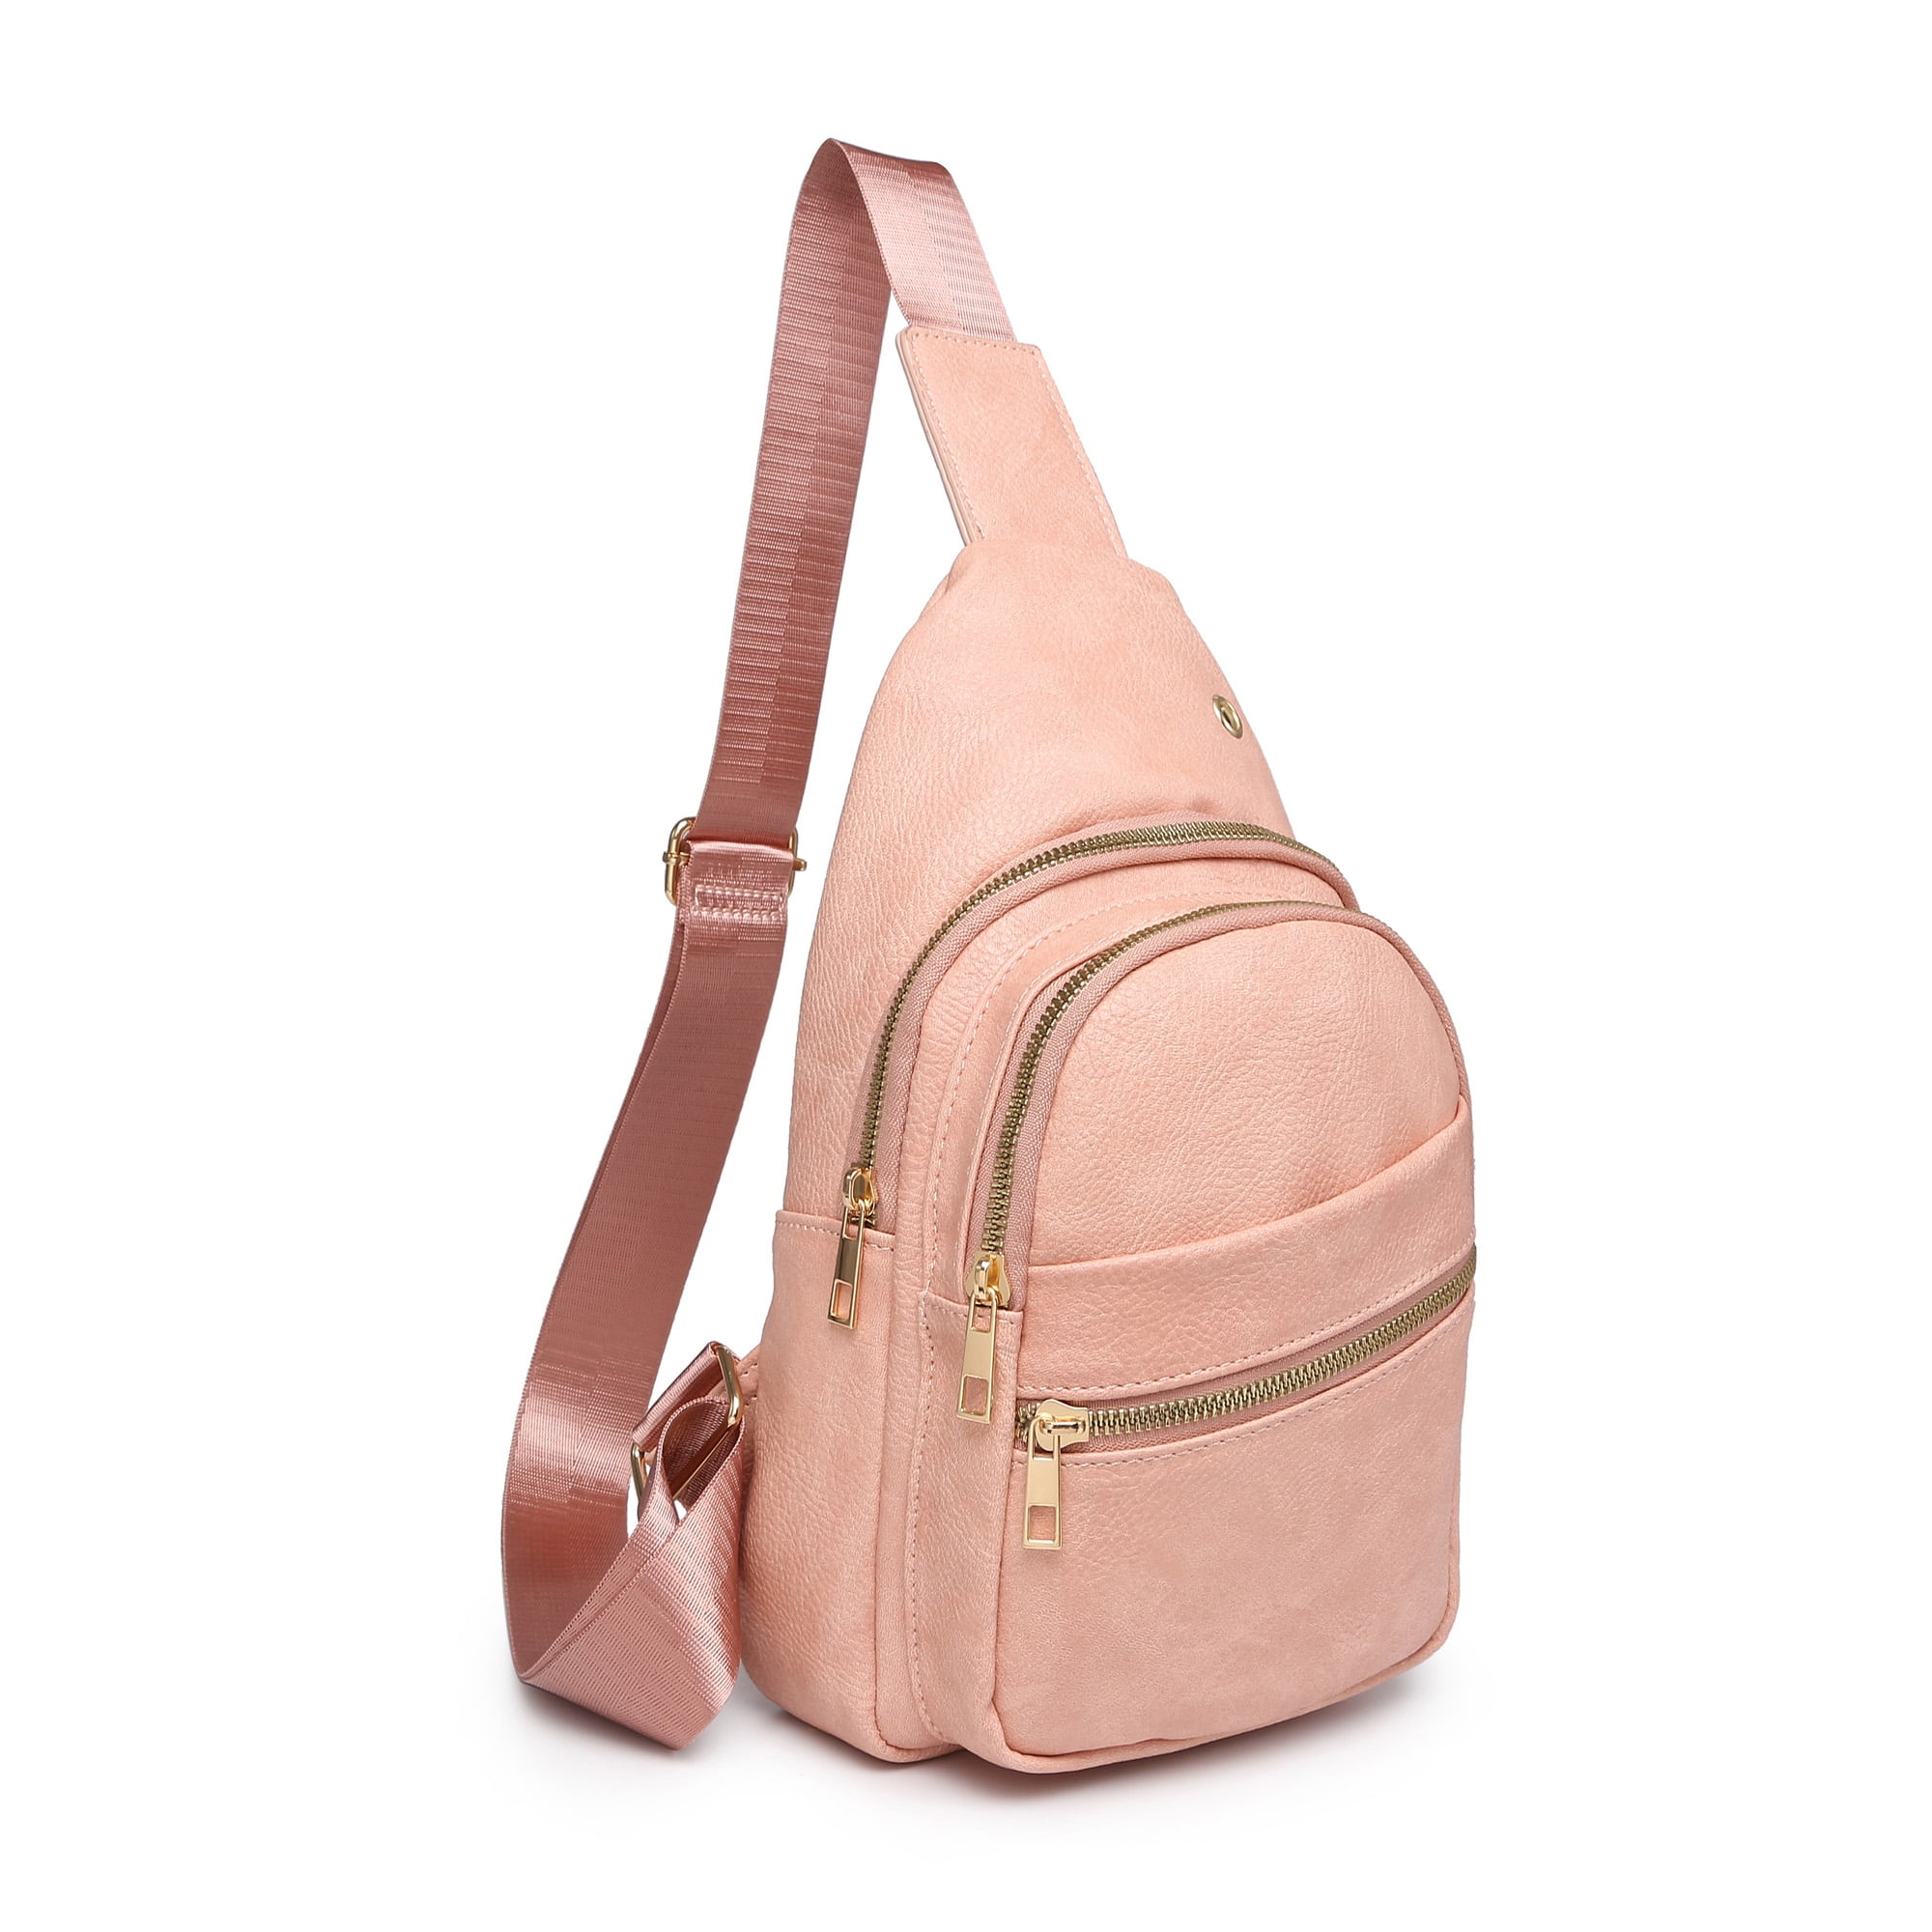 Poppy Leather Sling Backpack Bag for Women Travel Hiking Crossbody